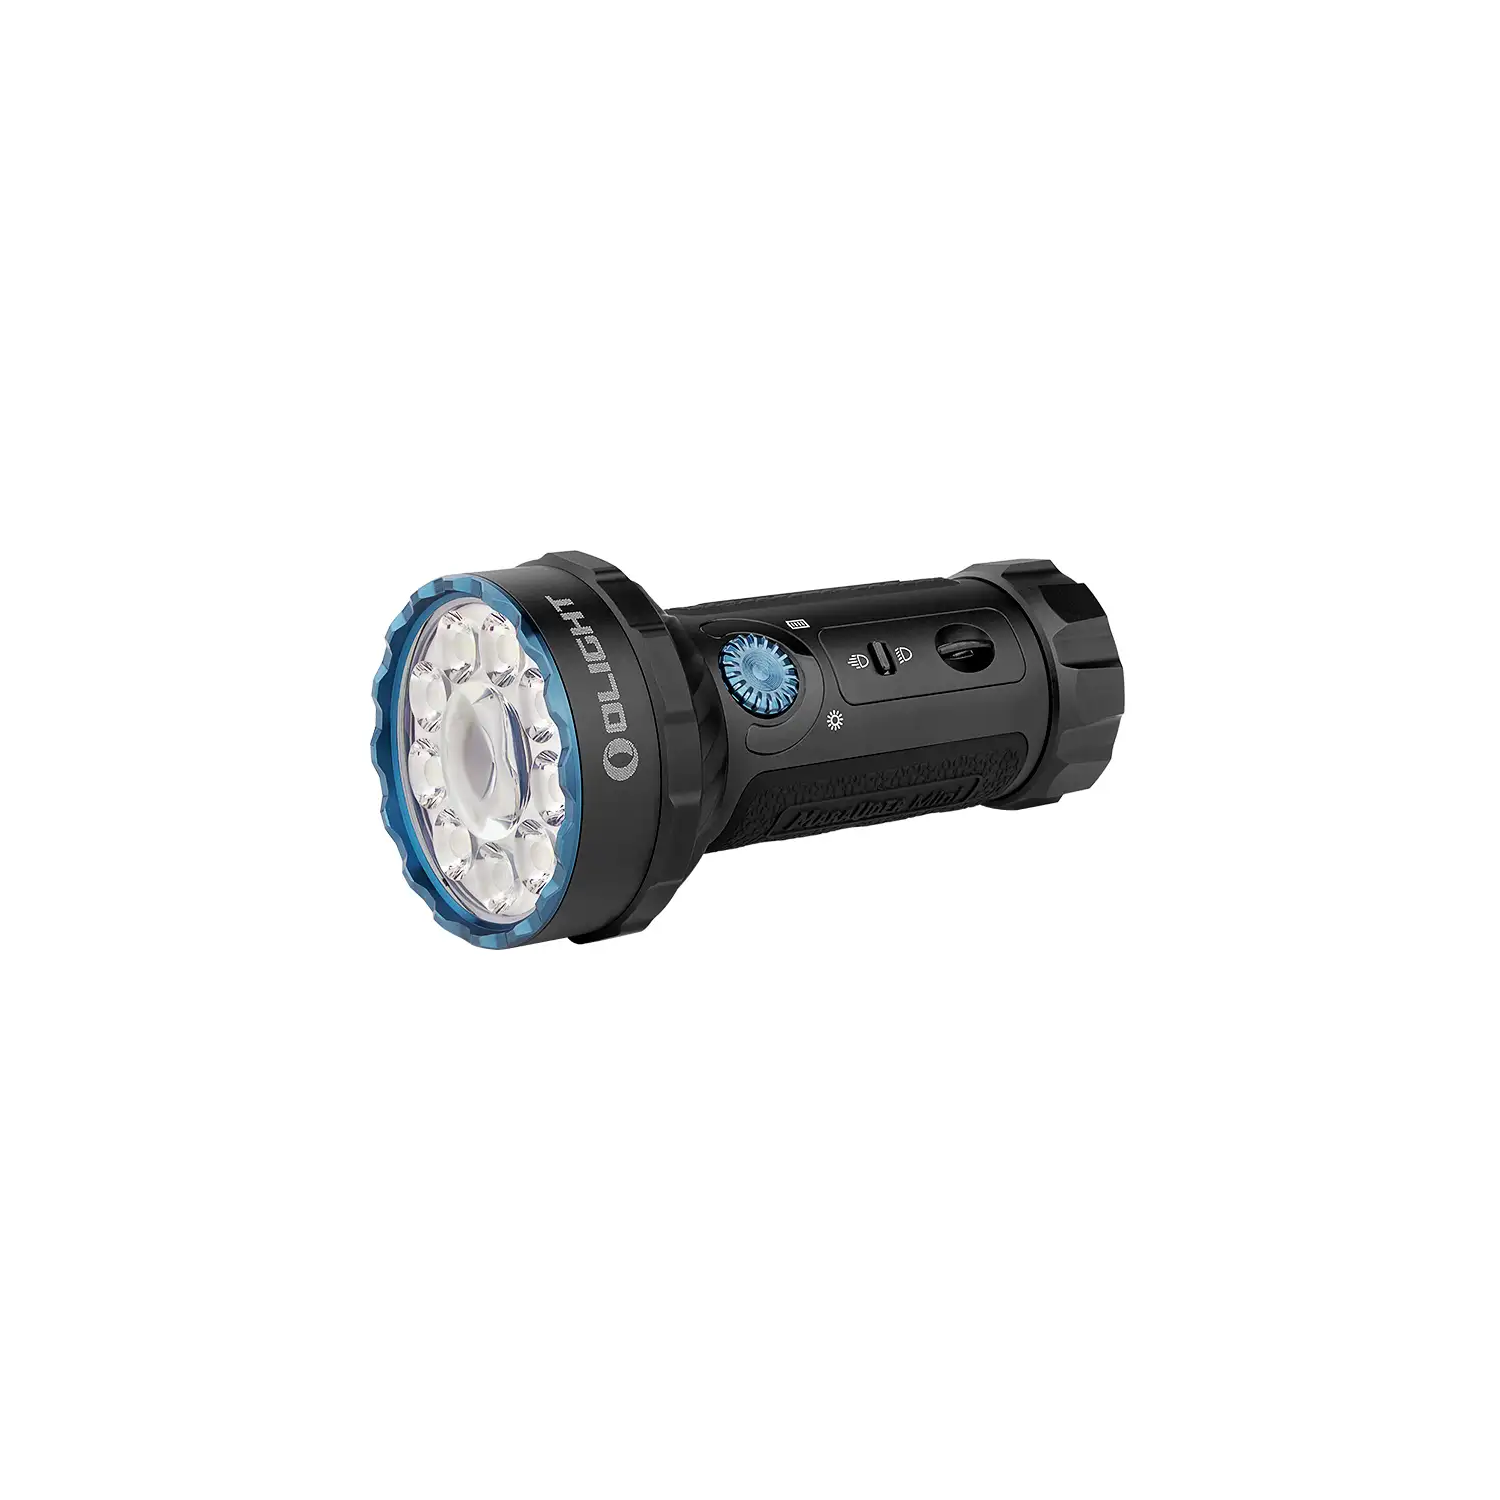 Image of the Marauder Mini Powerful LED Flashlight